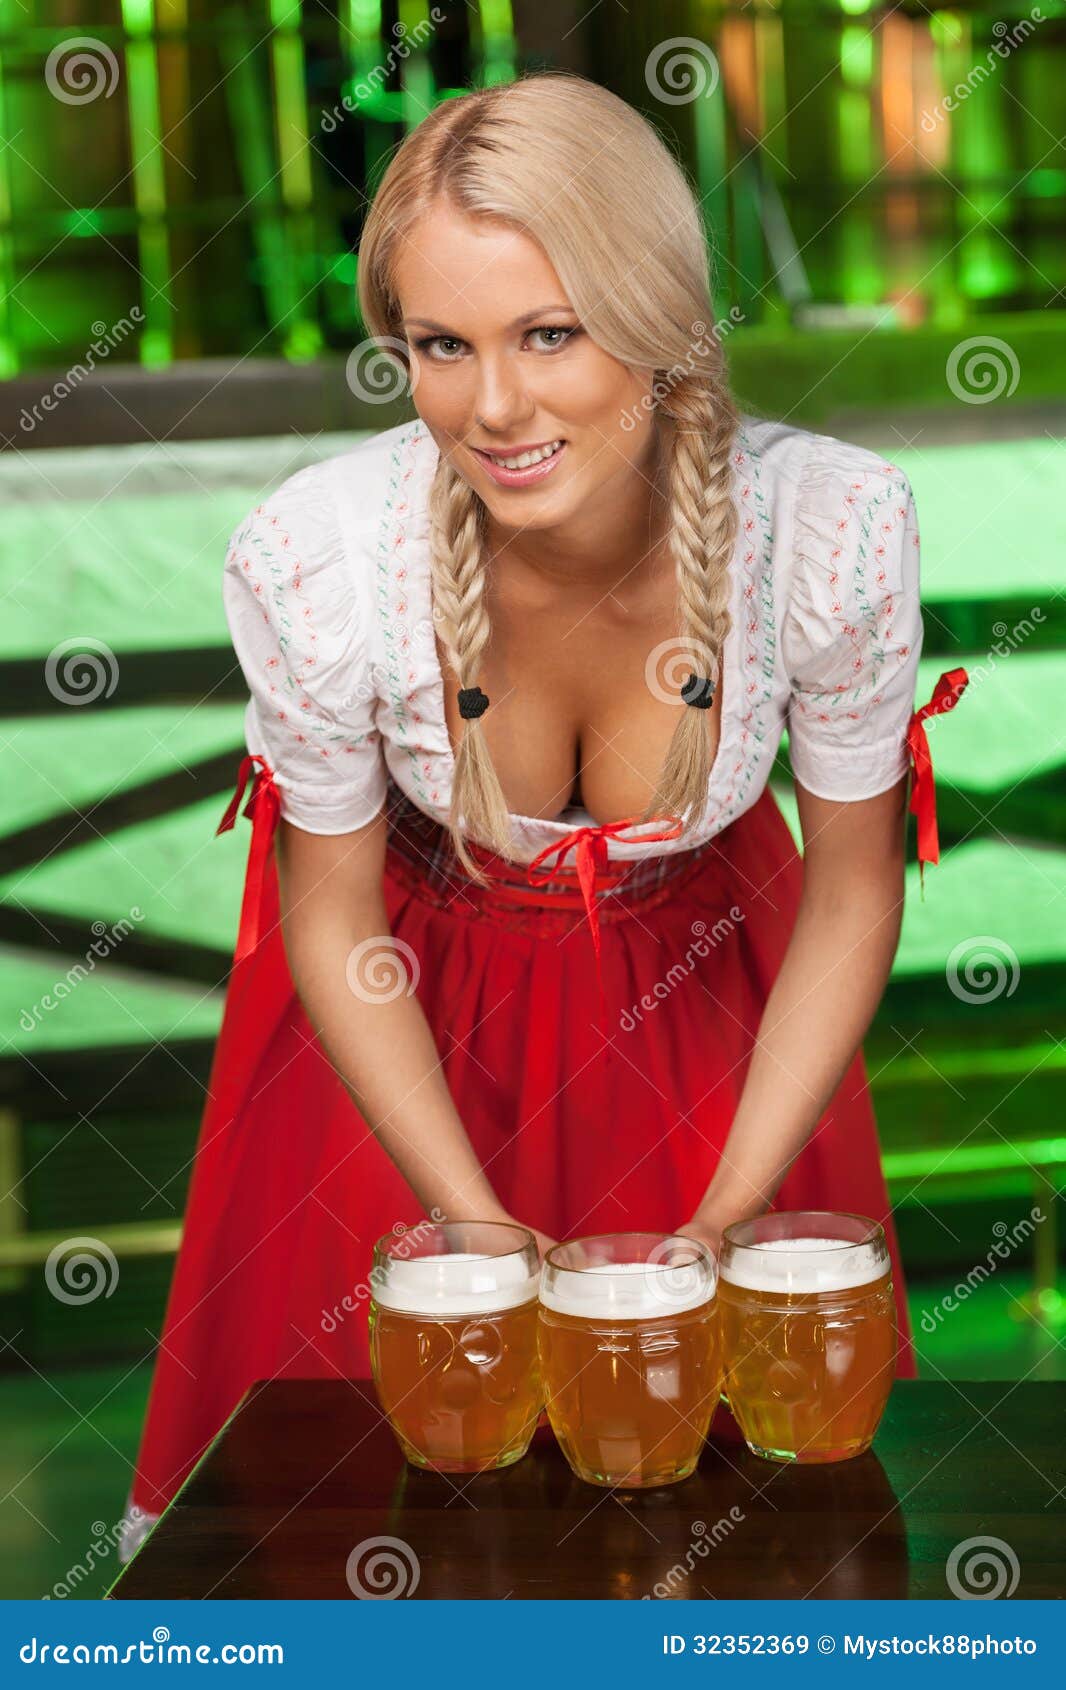 mujeres-en-ropa-alemana-tradicional-mujeres-jovenes-hermosas-en-t-32352369.jpg